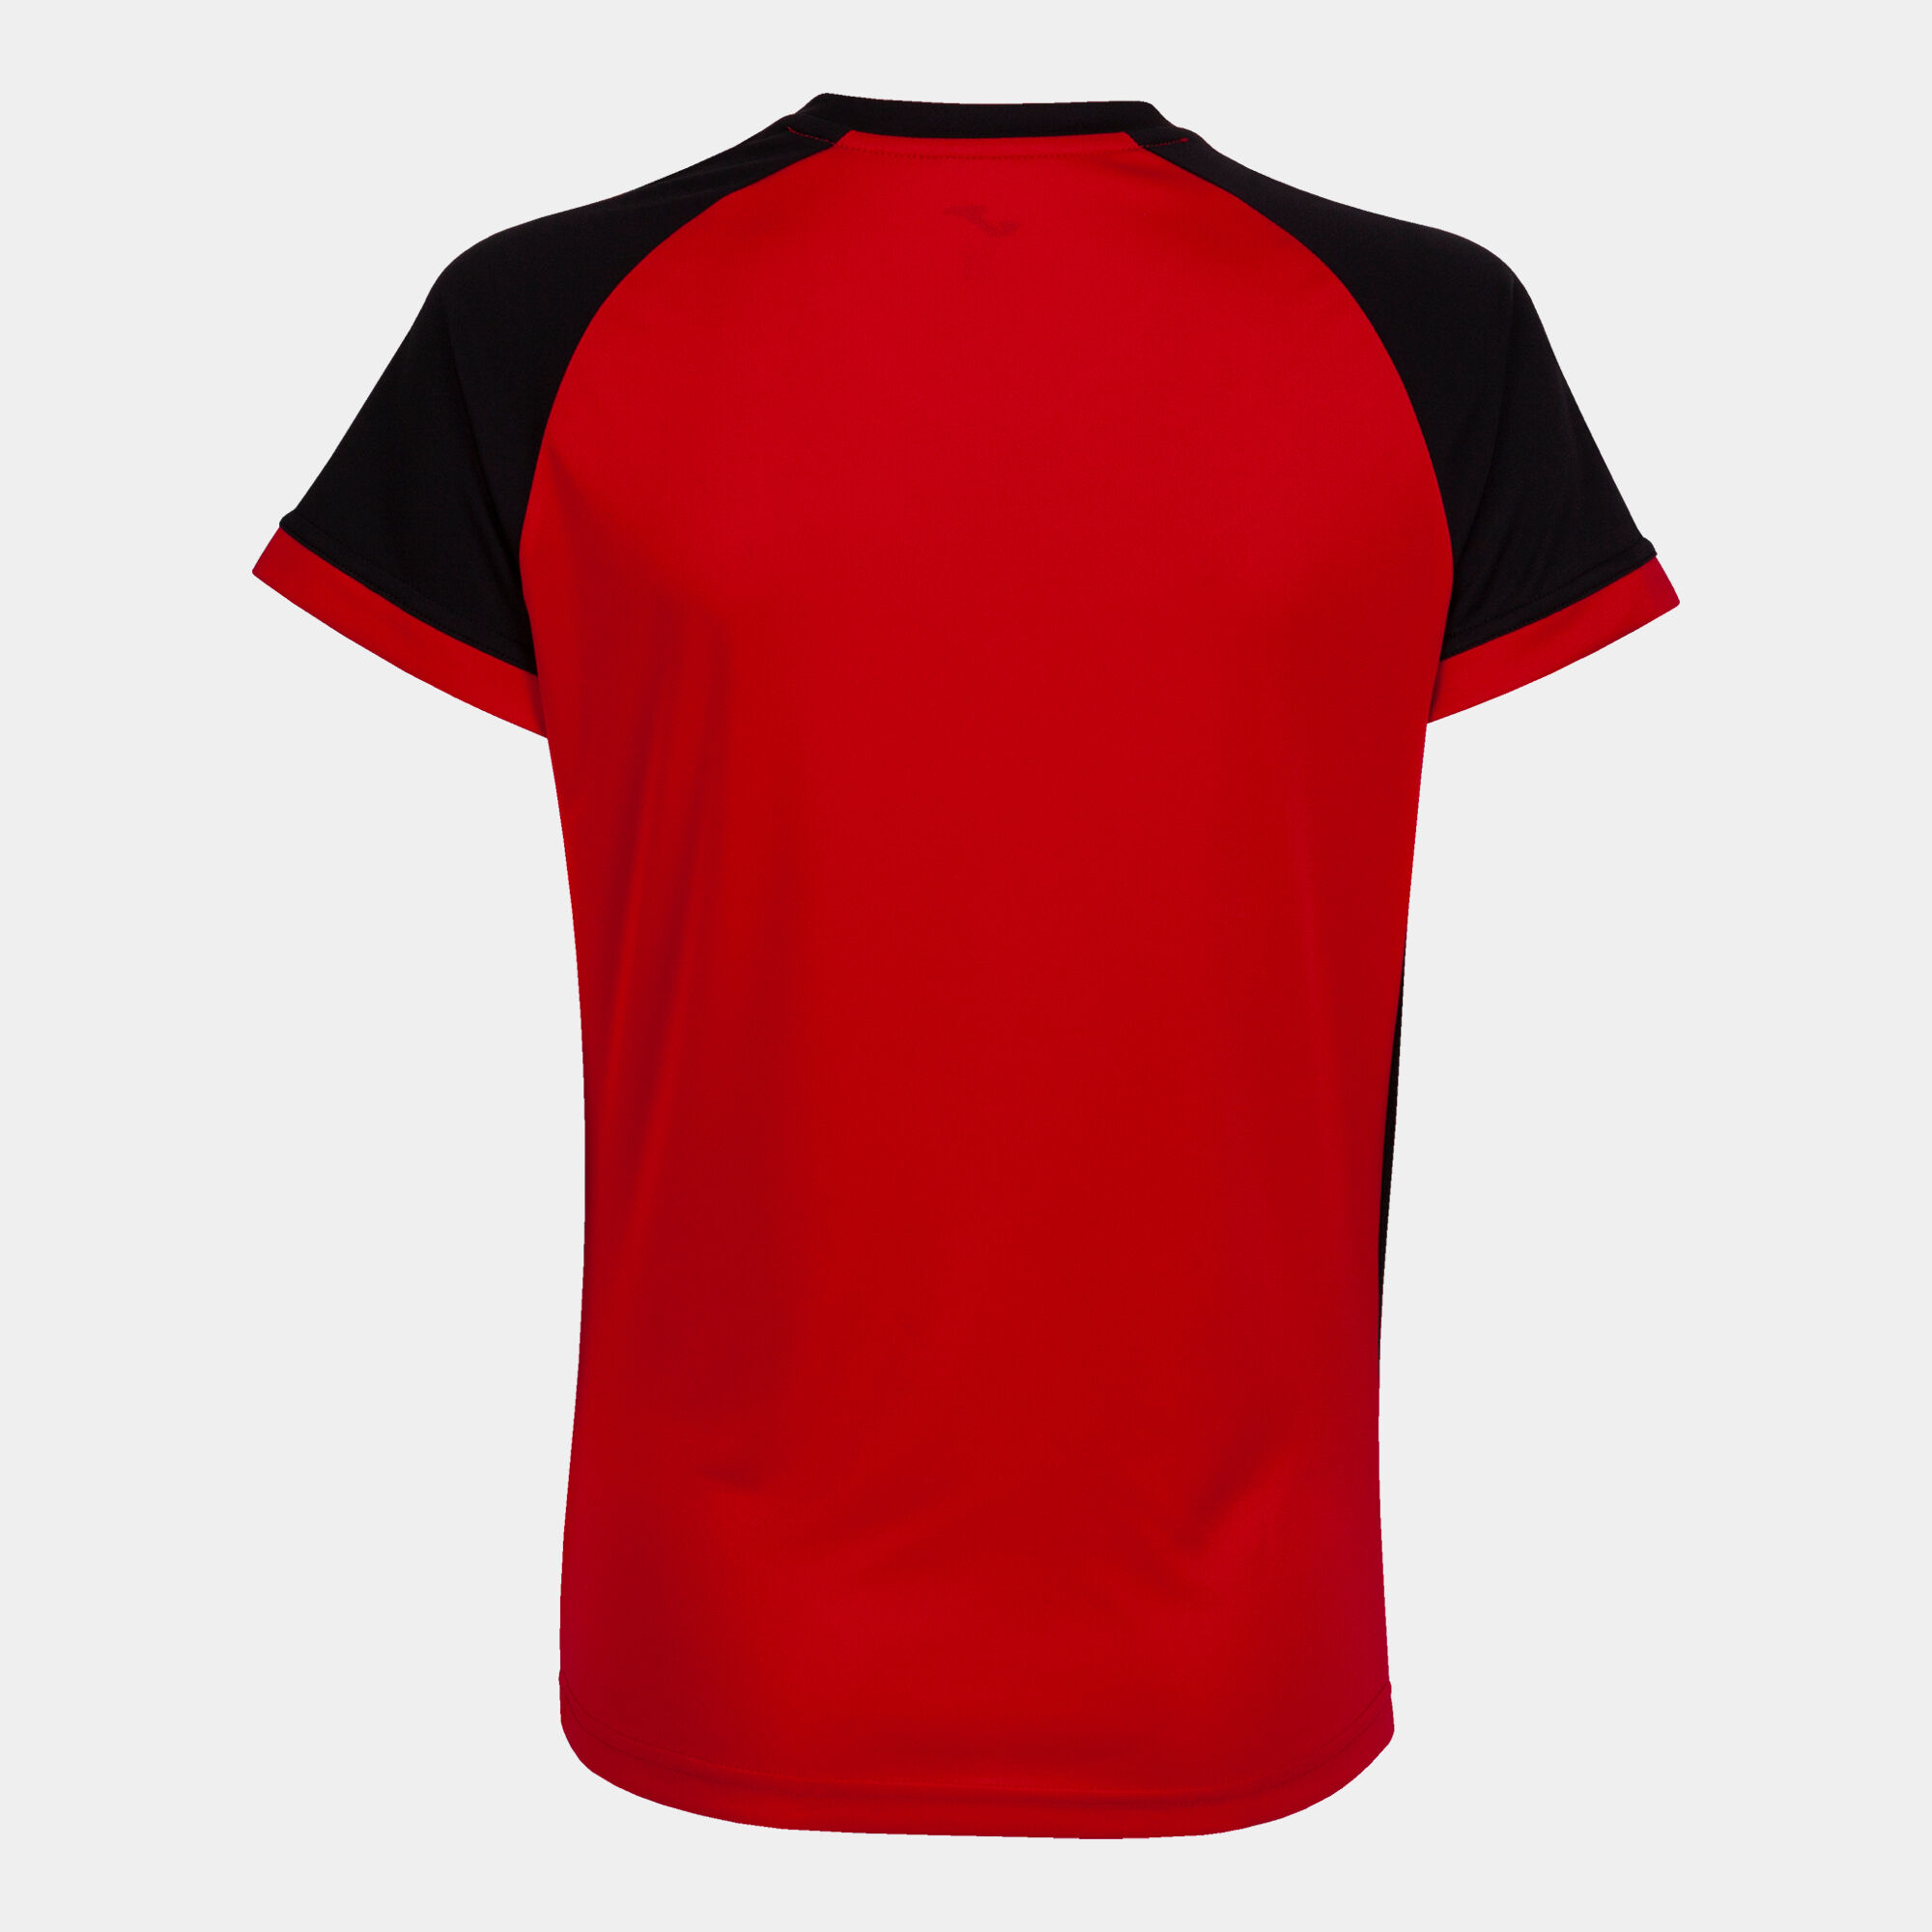 Camiseta manga corta mujer Championship VI rojo negro